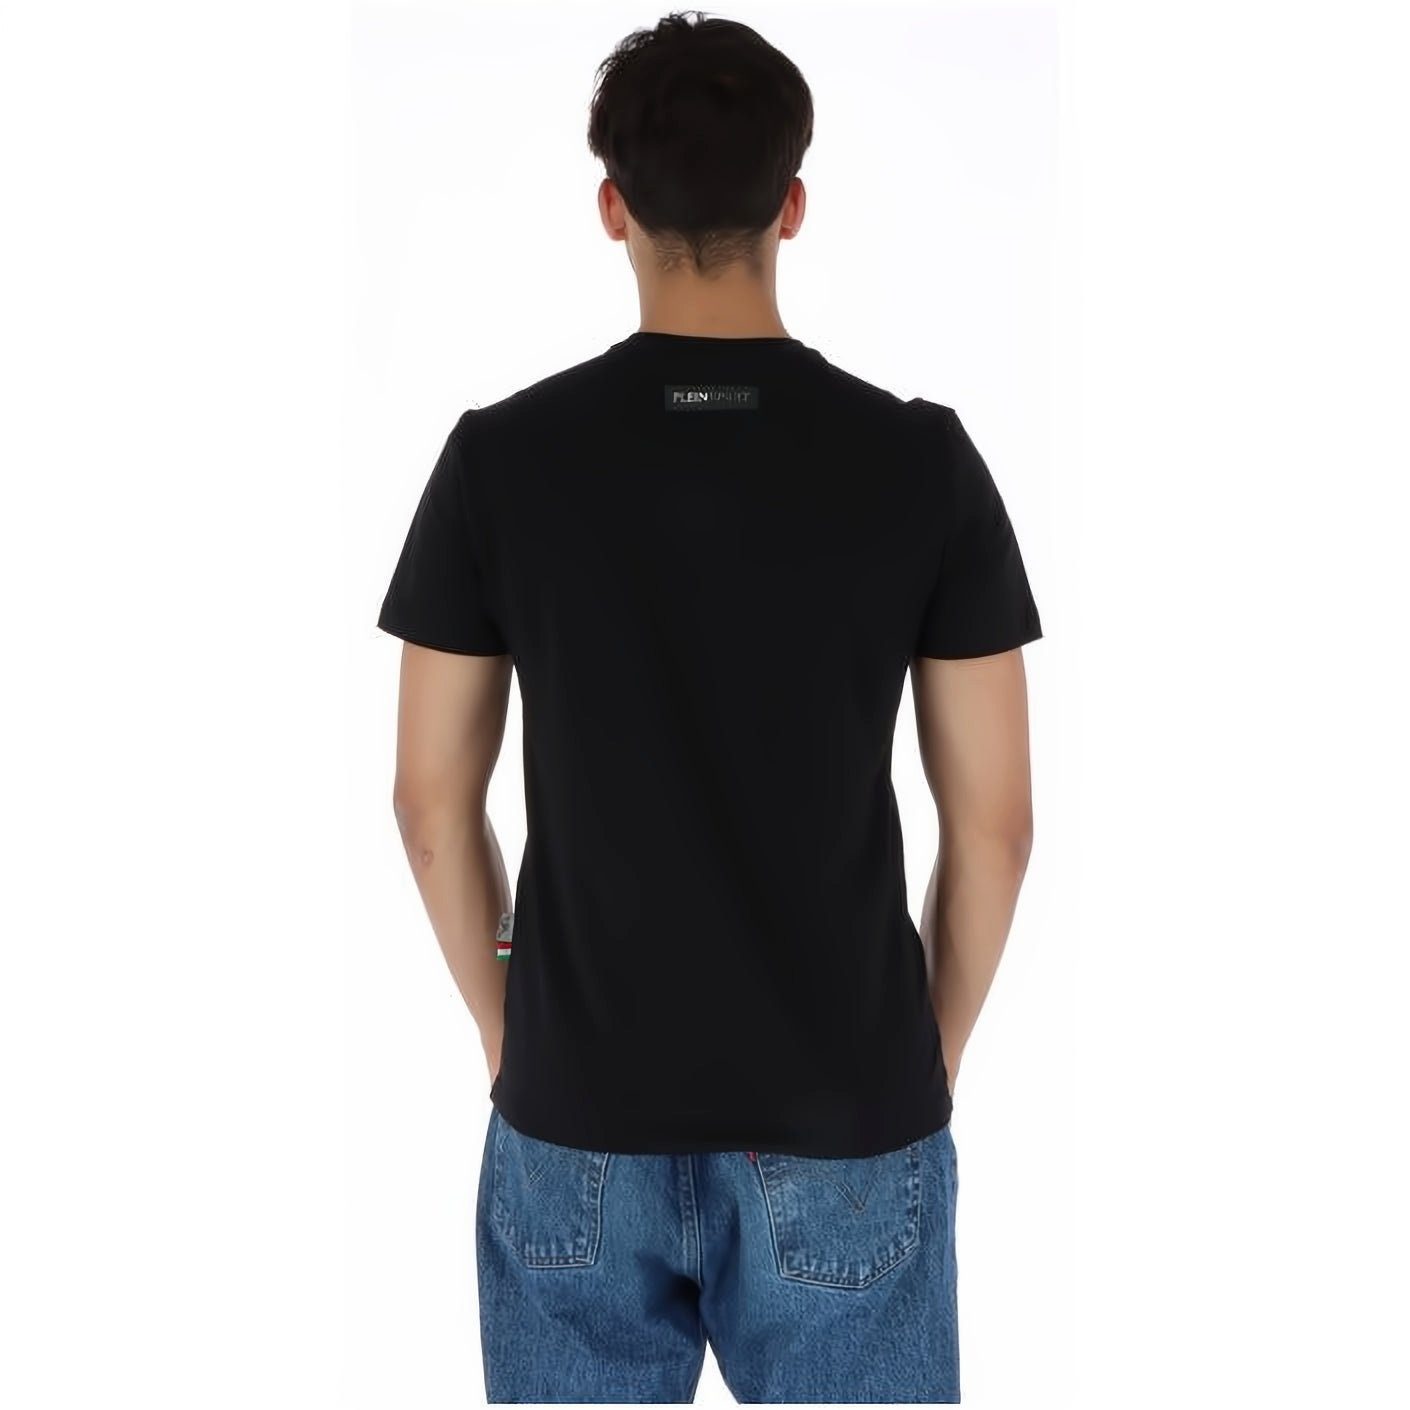 PLEIN Farbauswahl NECK T-Shirt Look, Stylischer SPORT vielfältige ROUND Tragekomfort, hoher